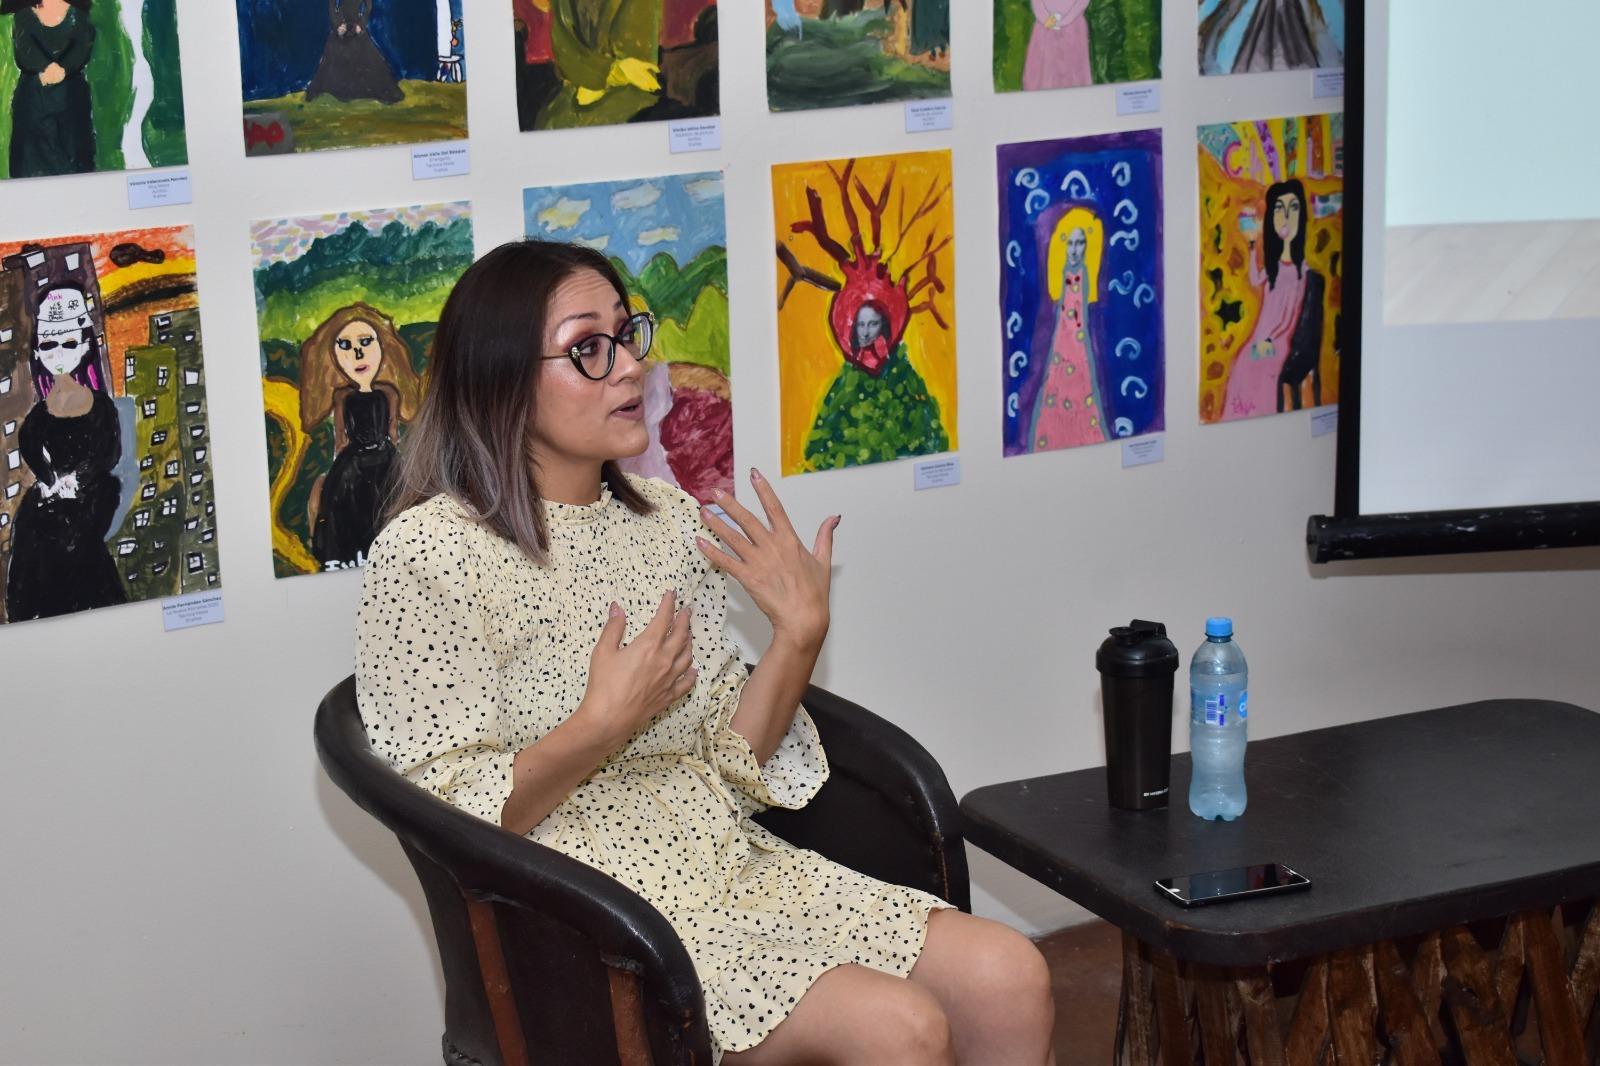 Presentarán “Mujeres en el arte” en IMAC